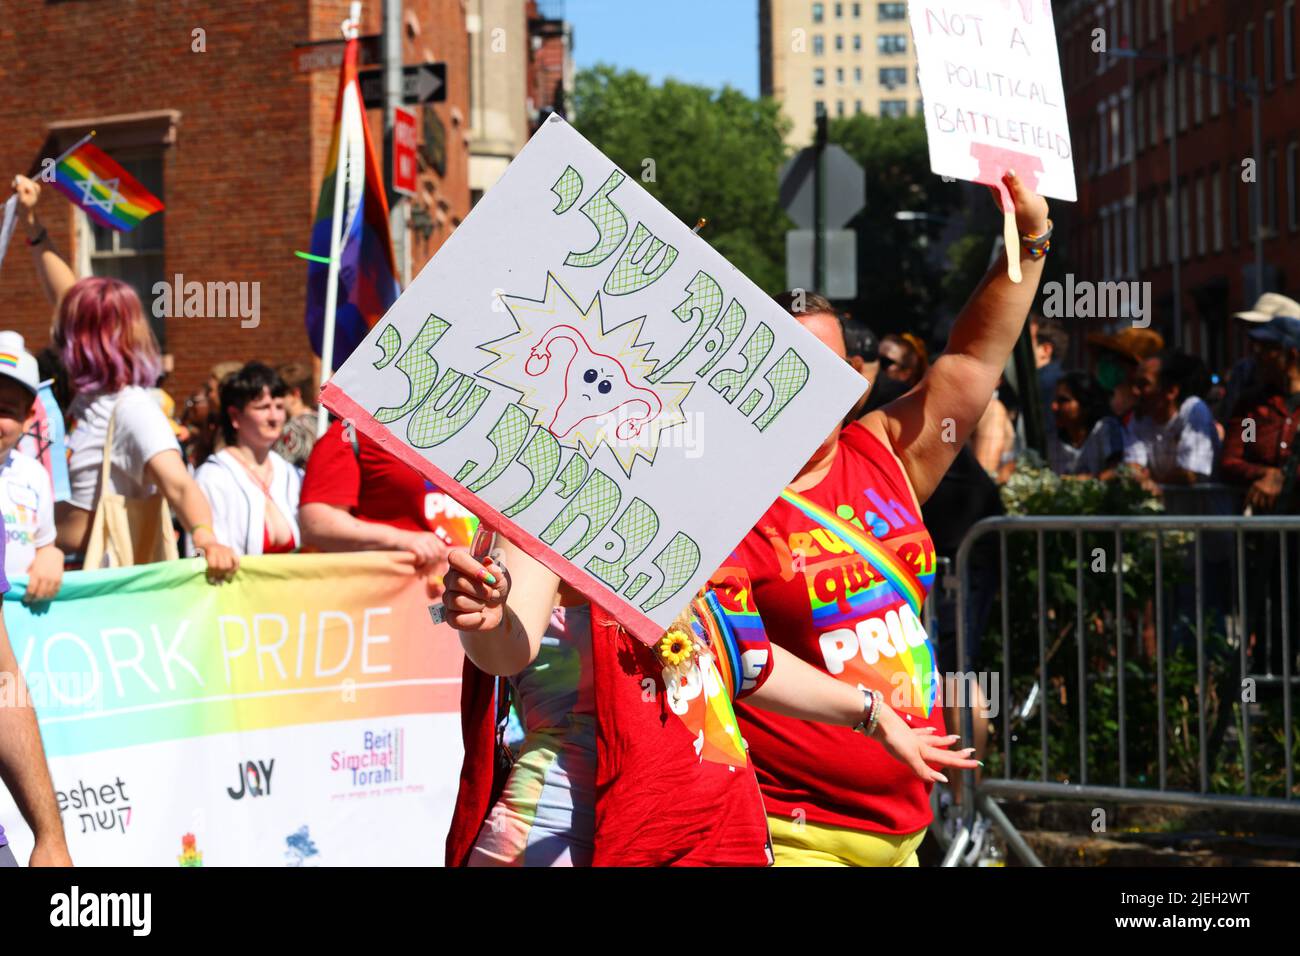 New York, 26 juin 2022. Une personne tient un panneau de protestation הבחירה שלי גוּף שלי mon corps mon choix à NYC Pride quelques jours après le renversement de Roe / Wade Banque D'Images